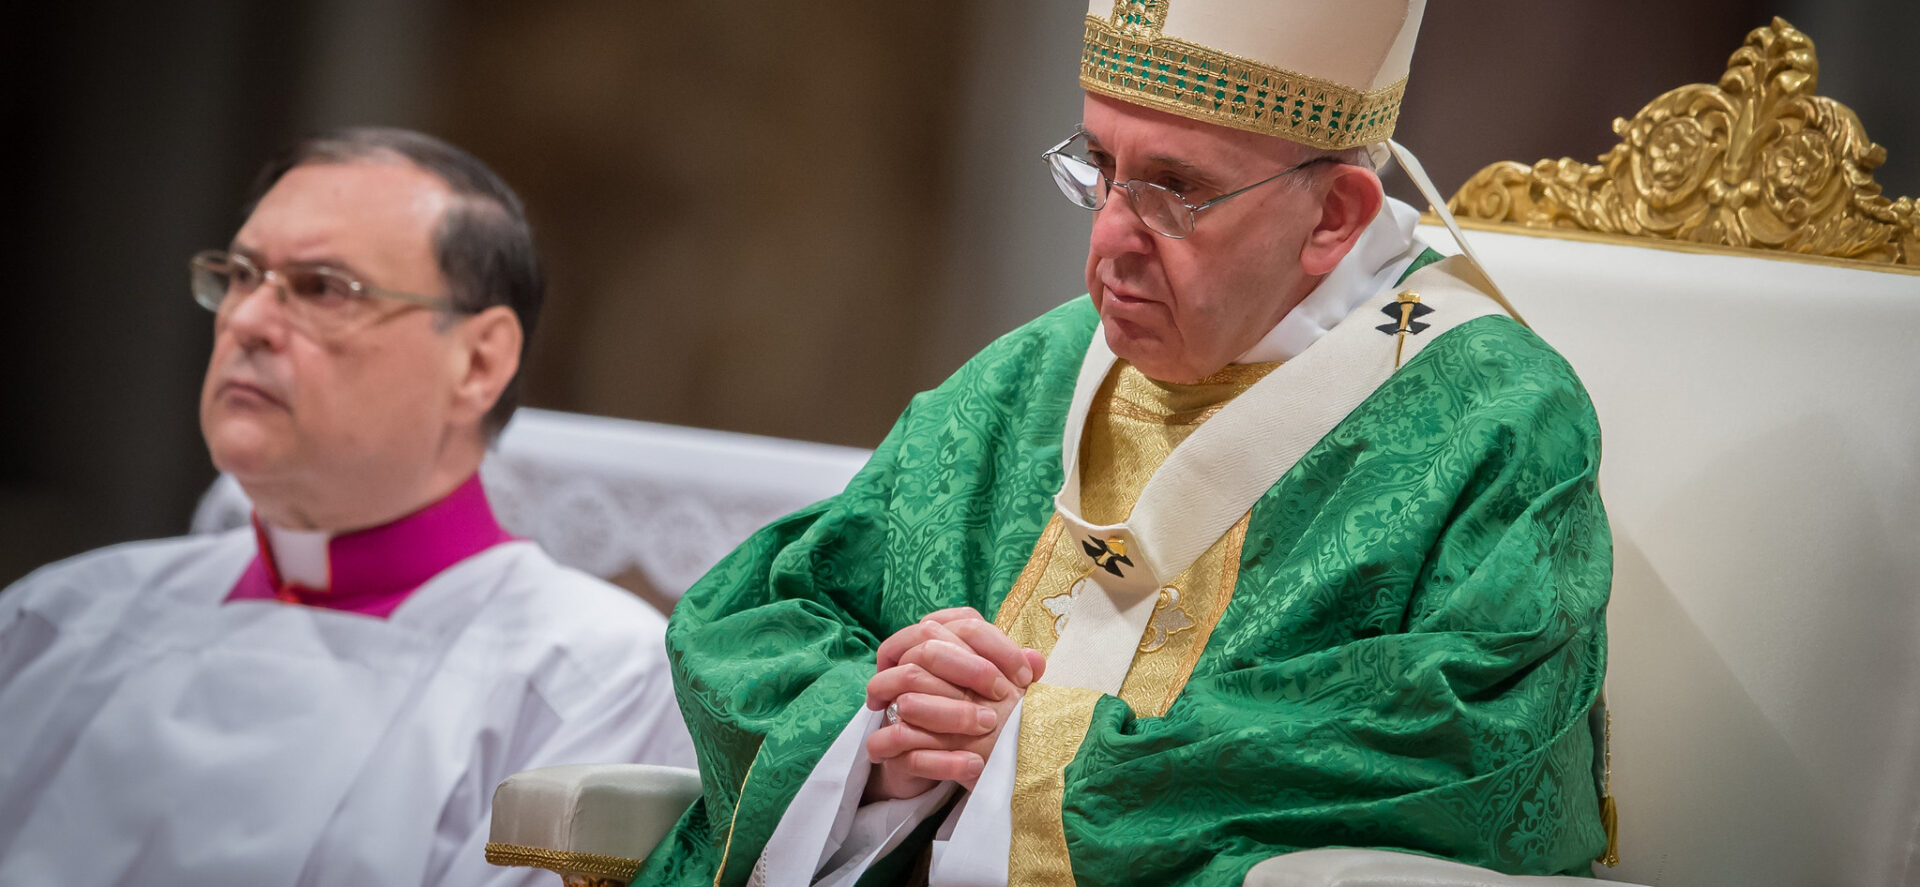 Le pape François a assuré ne pas rédiger pour le moment de texte théologique majeur | © Catholic Church of England and Wales/Flickr/CC BY-NC-ND 2.0